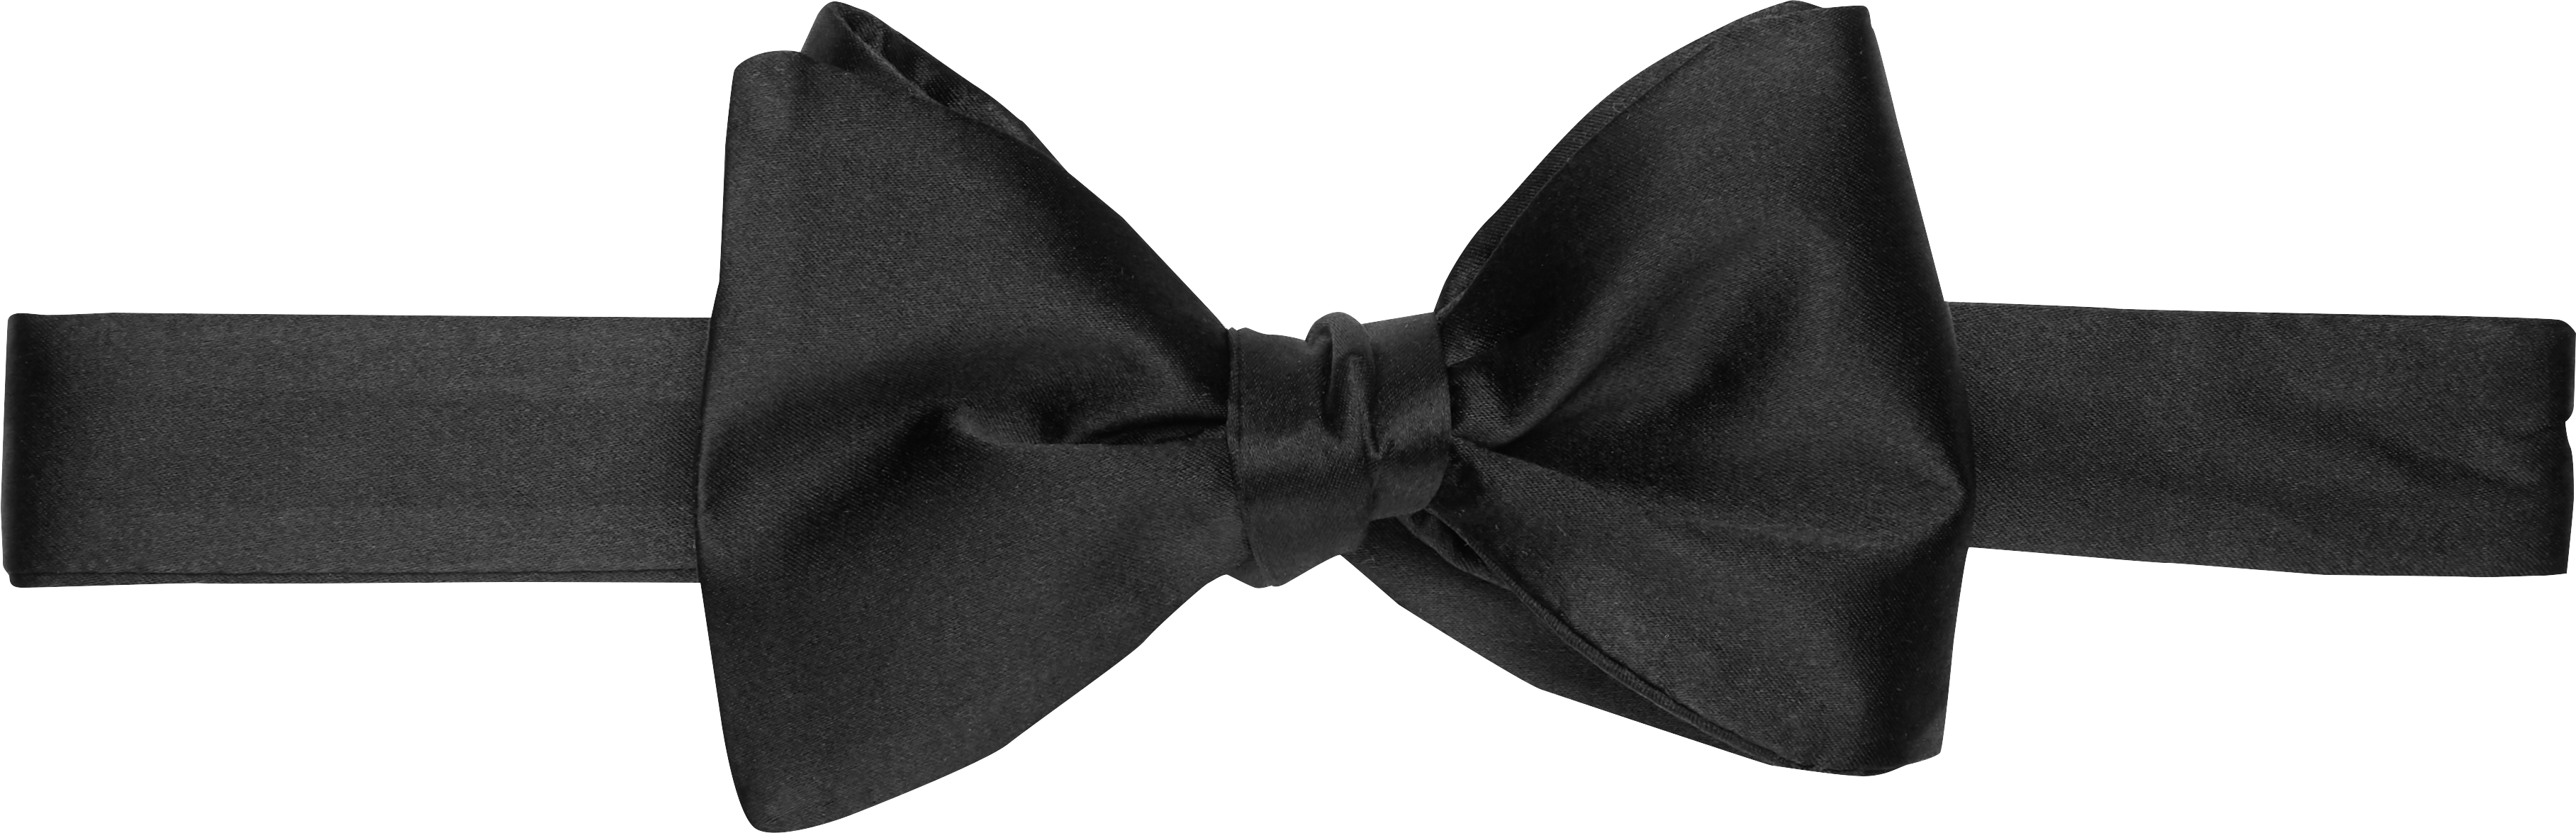 Self-Tie Bow Tie